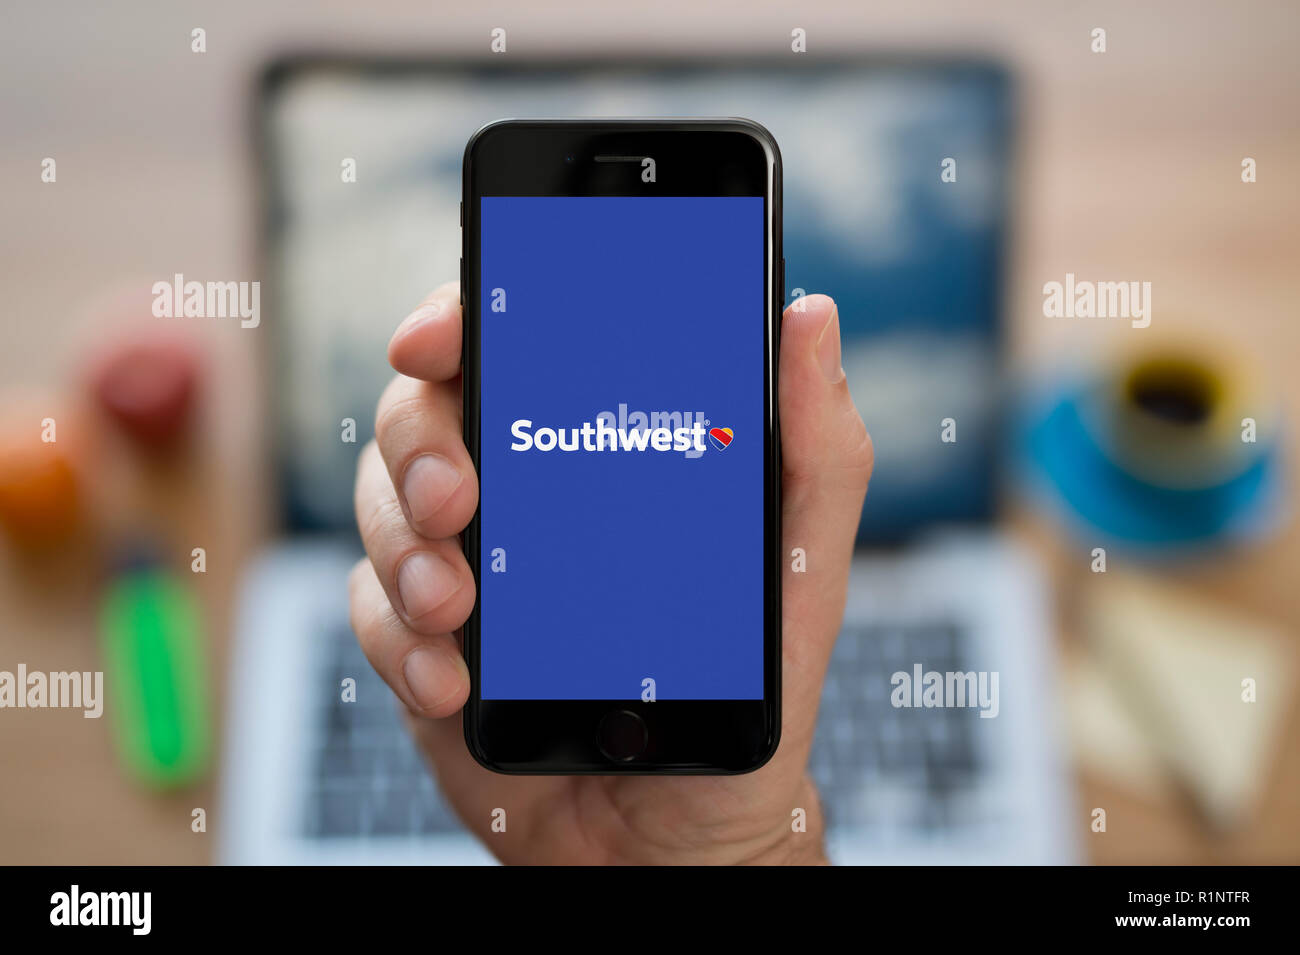 Ein Mann schaut auf seinem iPhone die zeigt die Southwest Airlines logo, während saß an seinem Computer Schreibtisch (nur redaktionelle Nutzung). Stockfoto